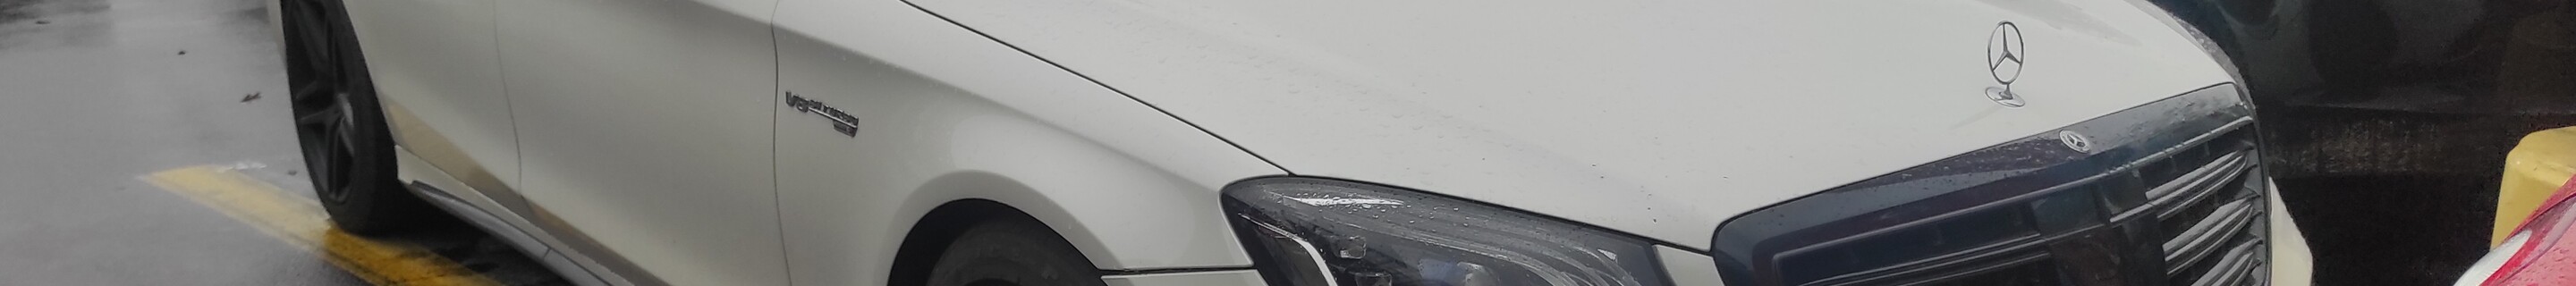 Mercedes-AMG Brabus S 63 V222 2017